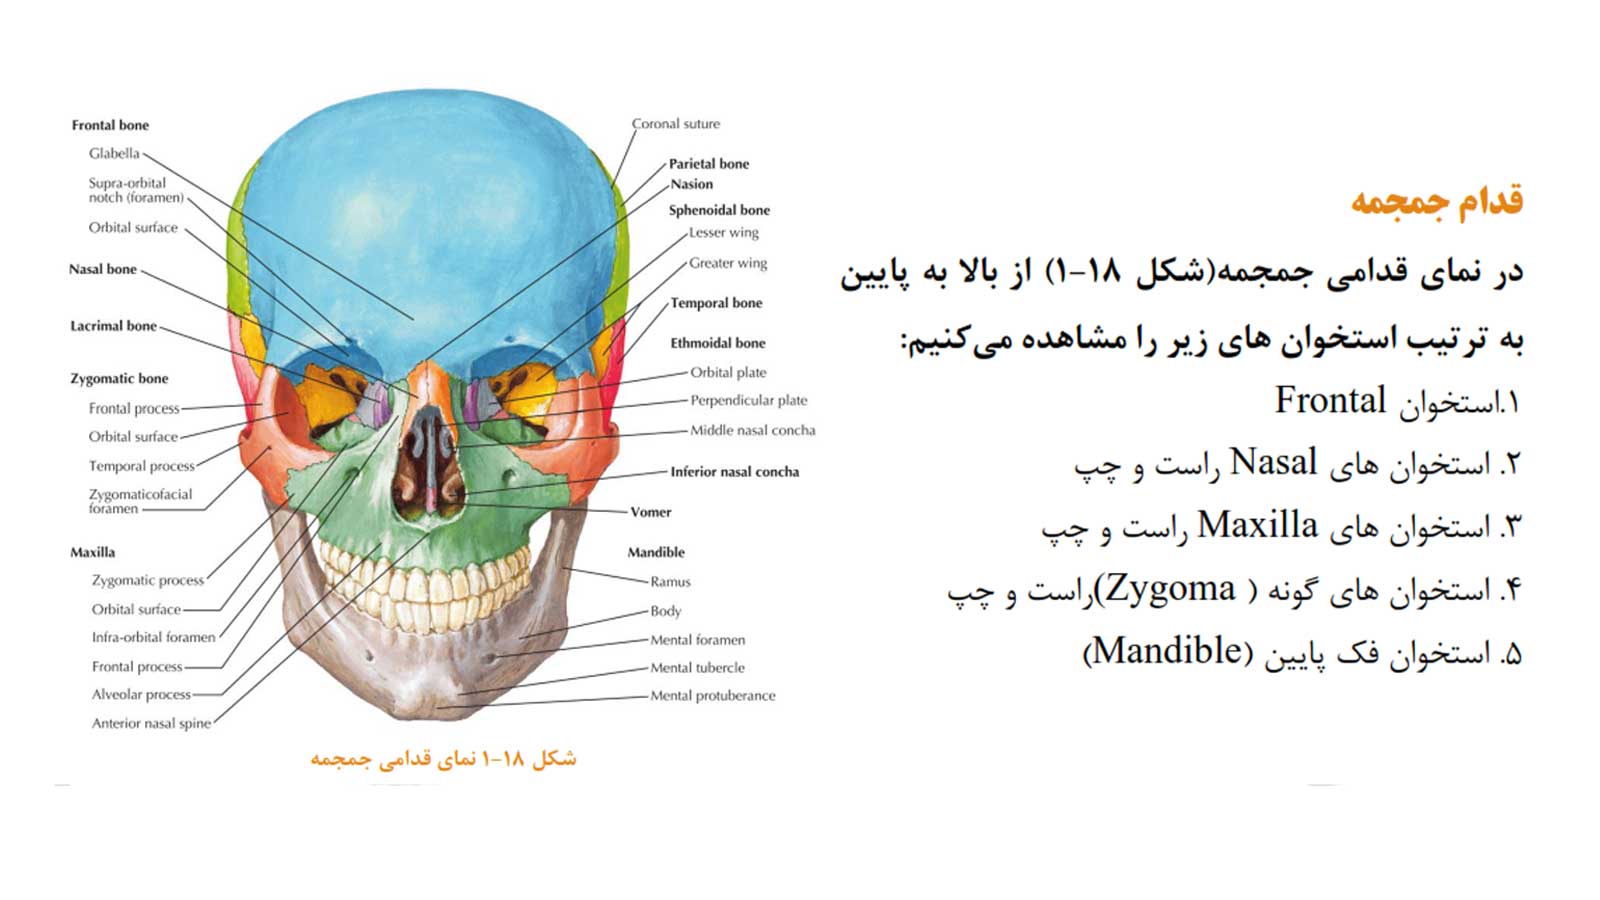 جزوه کامل سر و گردن د.ع.پ.شهیدبهشتی | کاملا رنگی